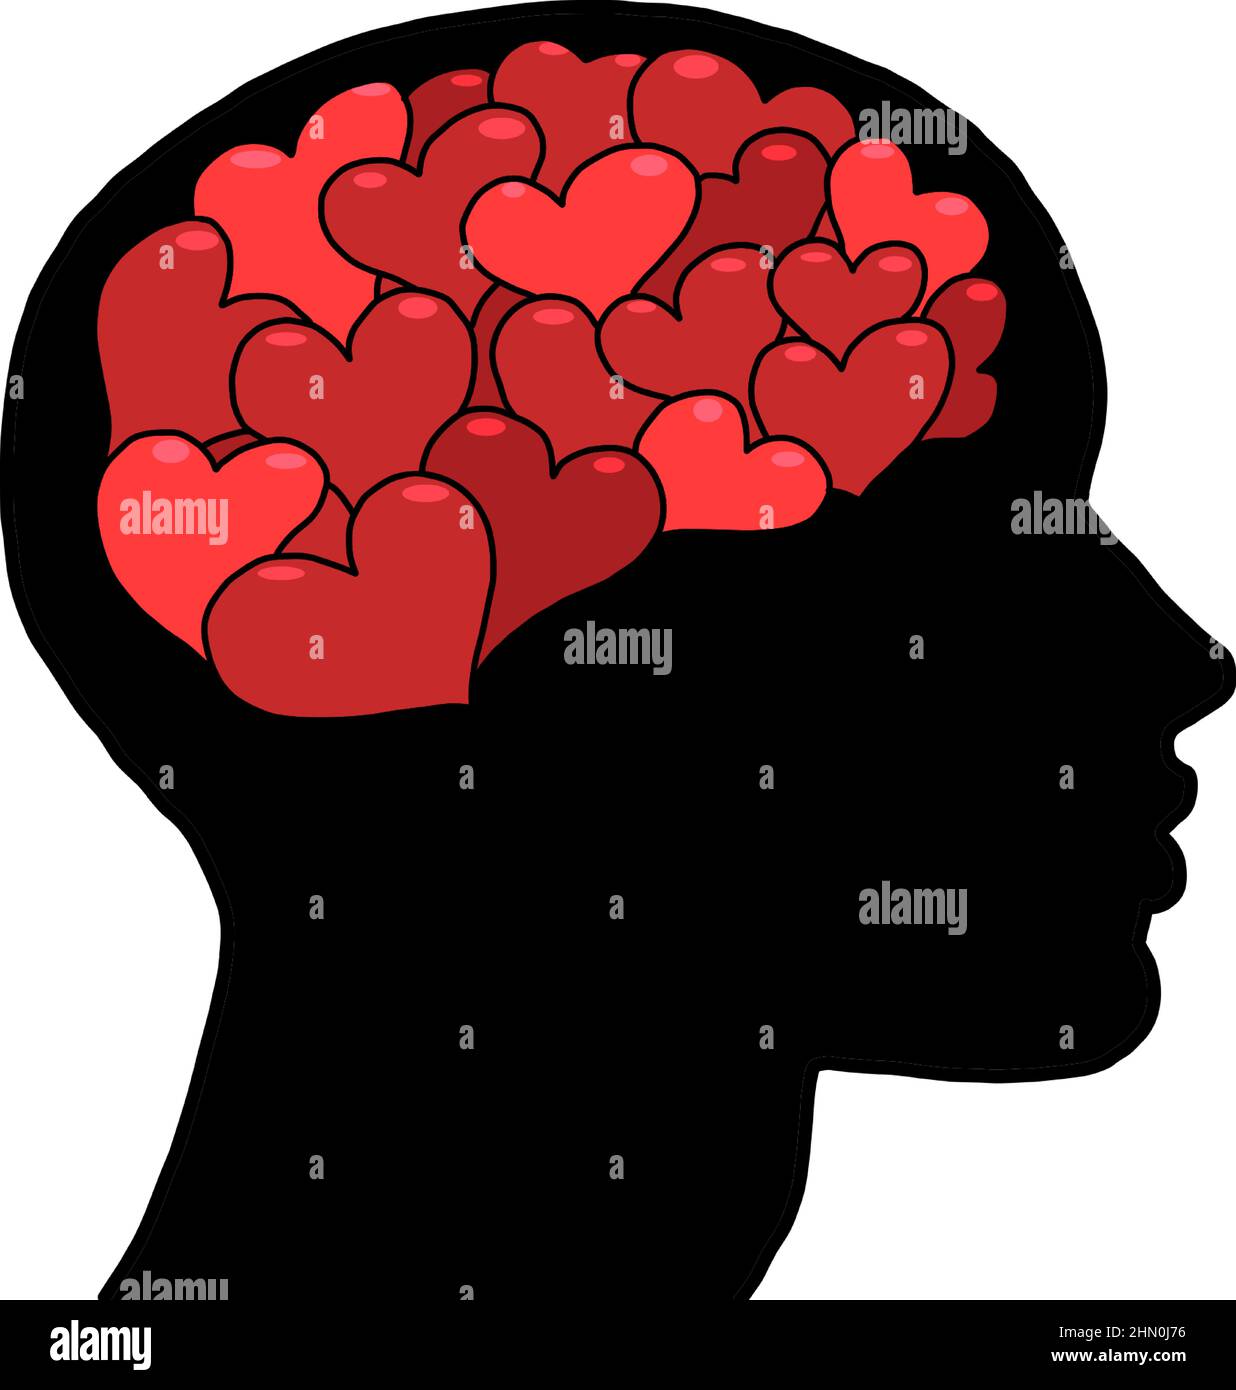 Cuore rosso San Valentino amore romanticismo pensieri nella silhouette della testa, sogni. Illustrazione Vettoriale